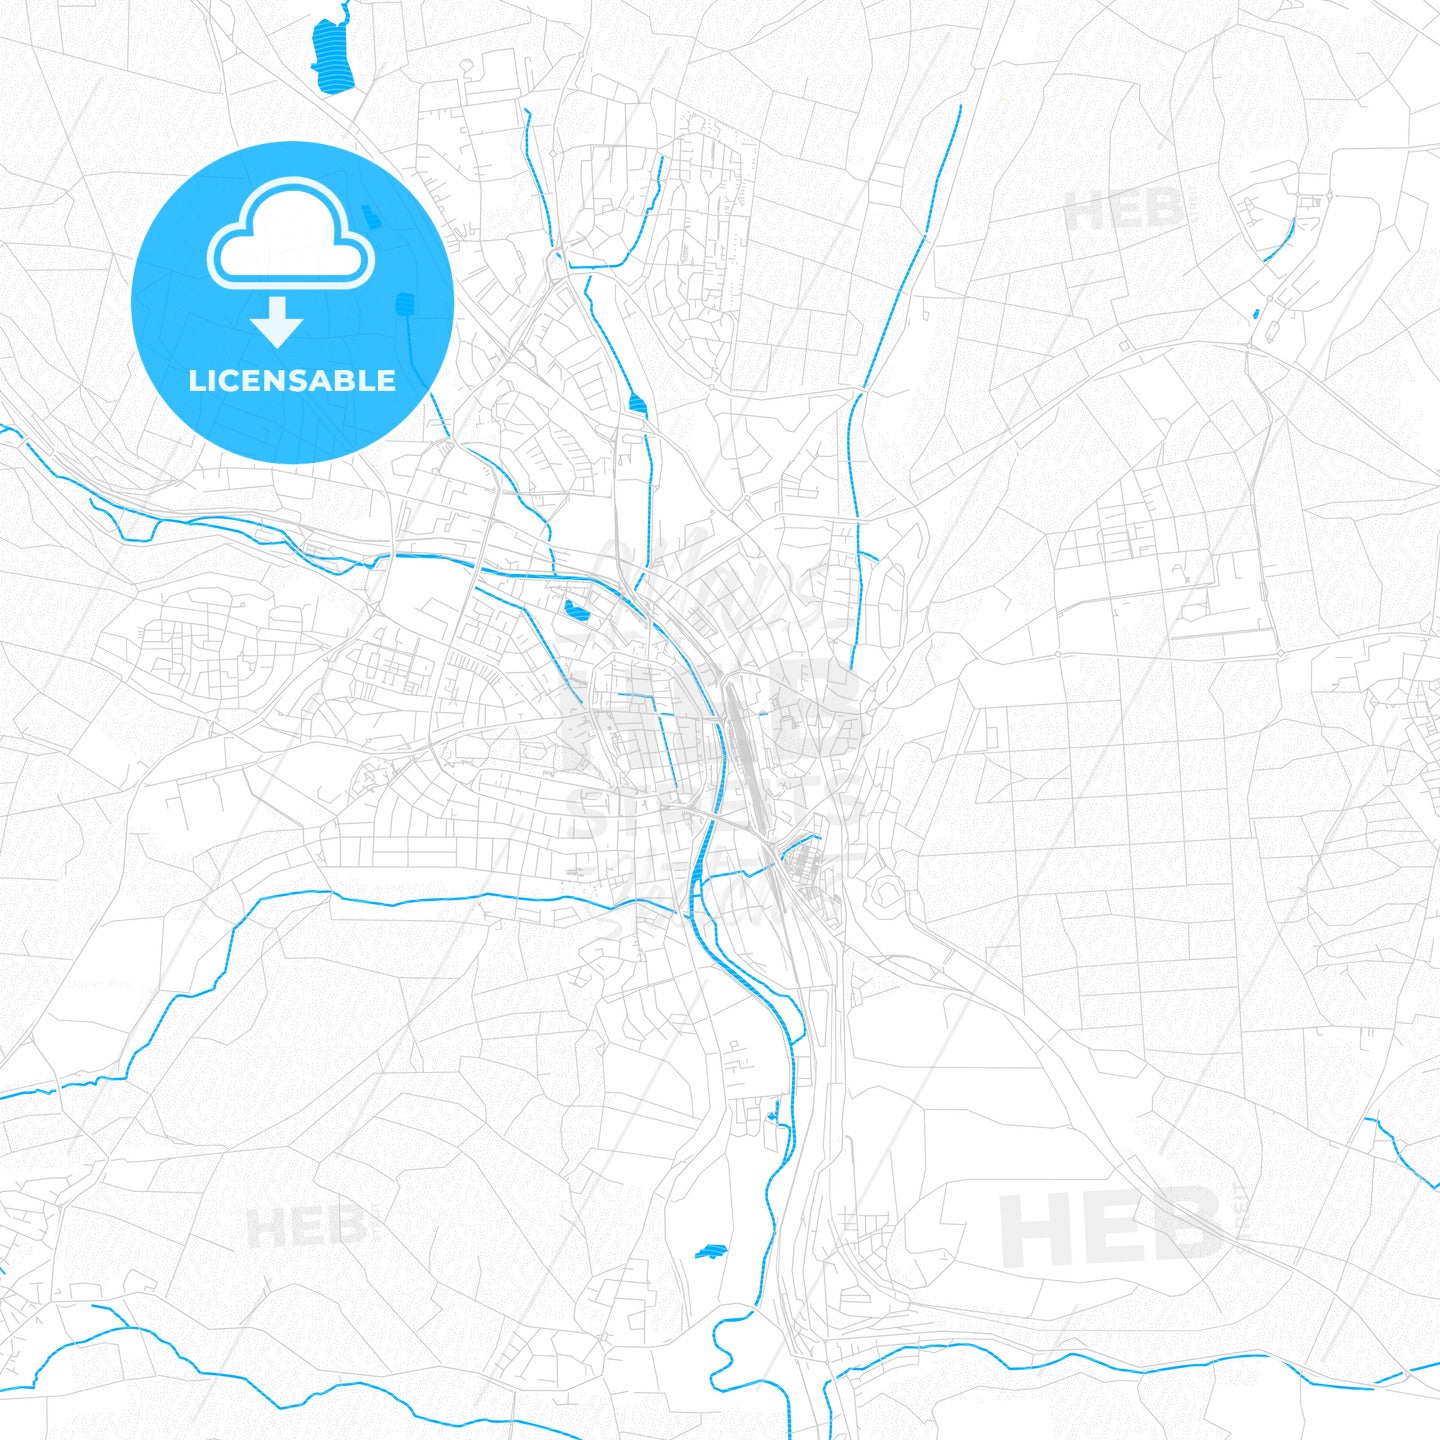 Villingen-Schwenningen, Germany PDF vector map with water in focus